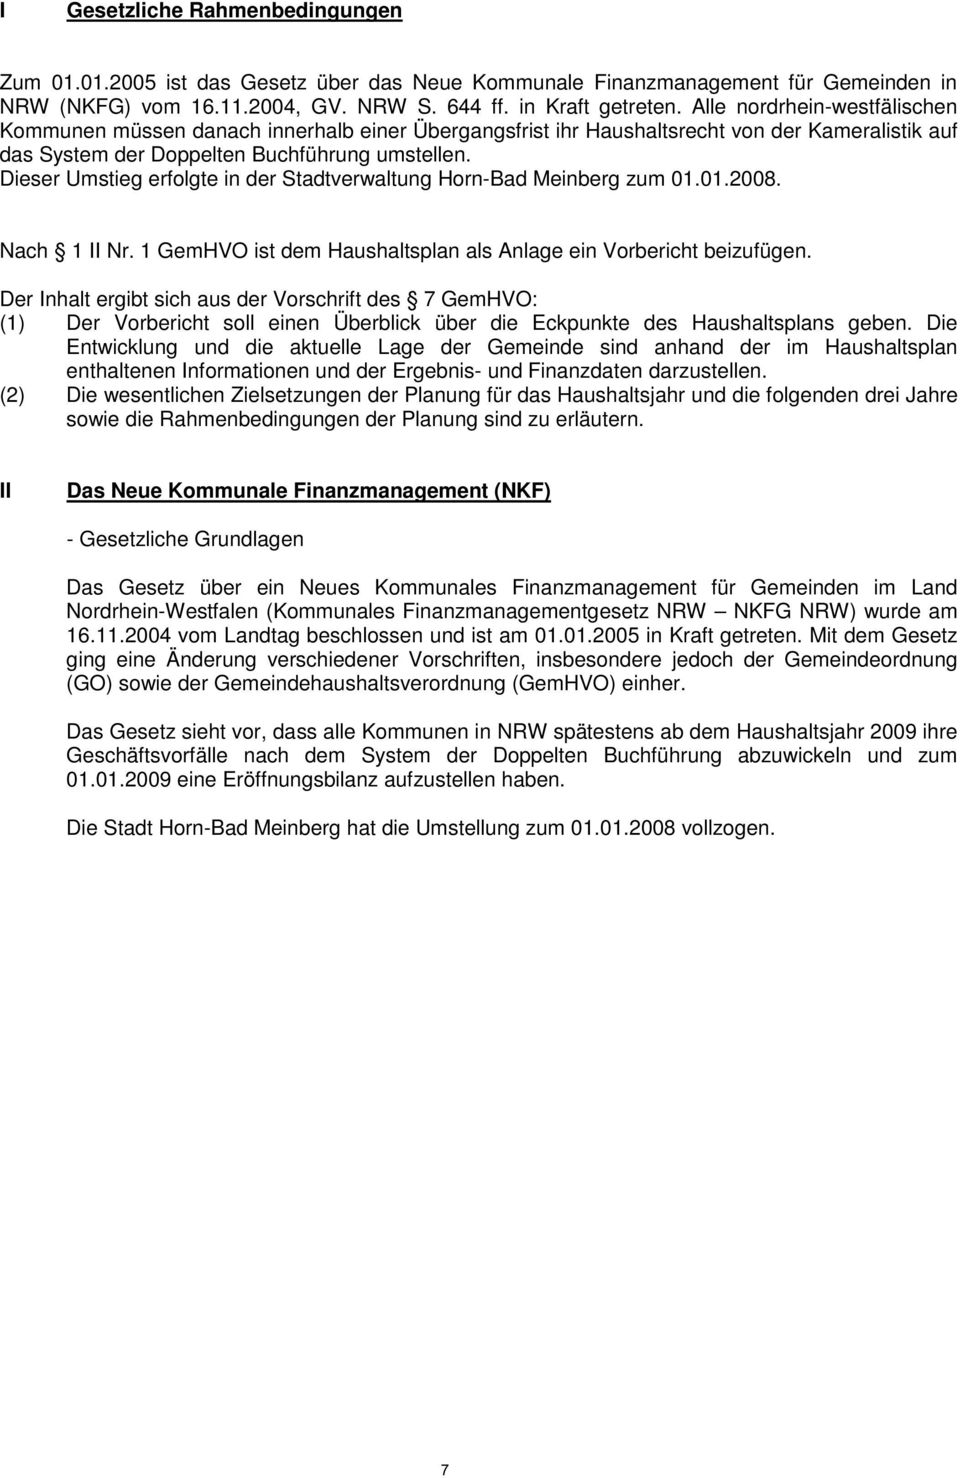 Dieser Umstieg erfolgte in der Stadtverwaltung Horn-Bad Meinberg zum 01.01.2008. Nach 1 II Nr. 1 GemHVO ist dem Haushaltsplan als Anlage ein Vorbericht beizufügen.